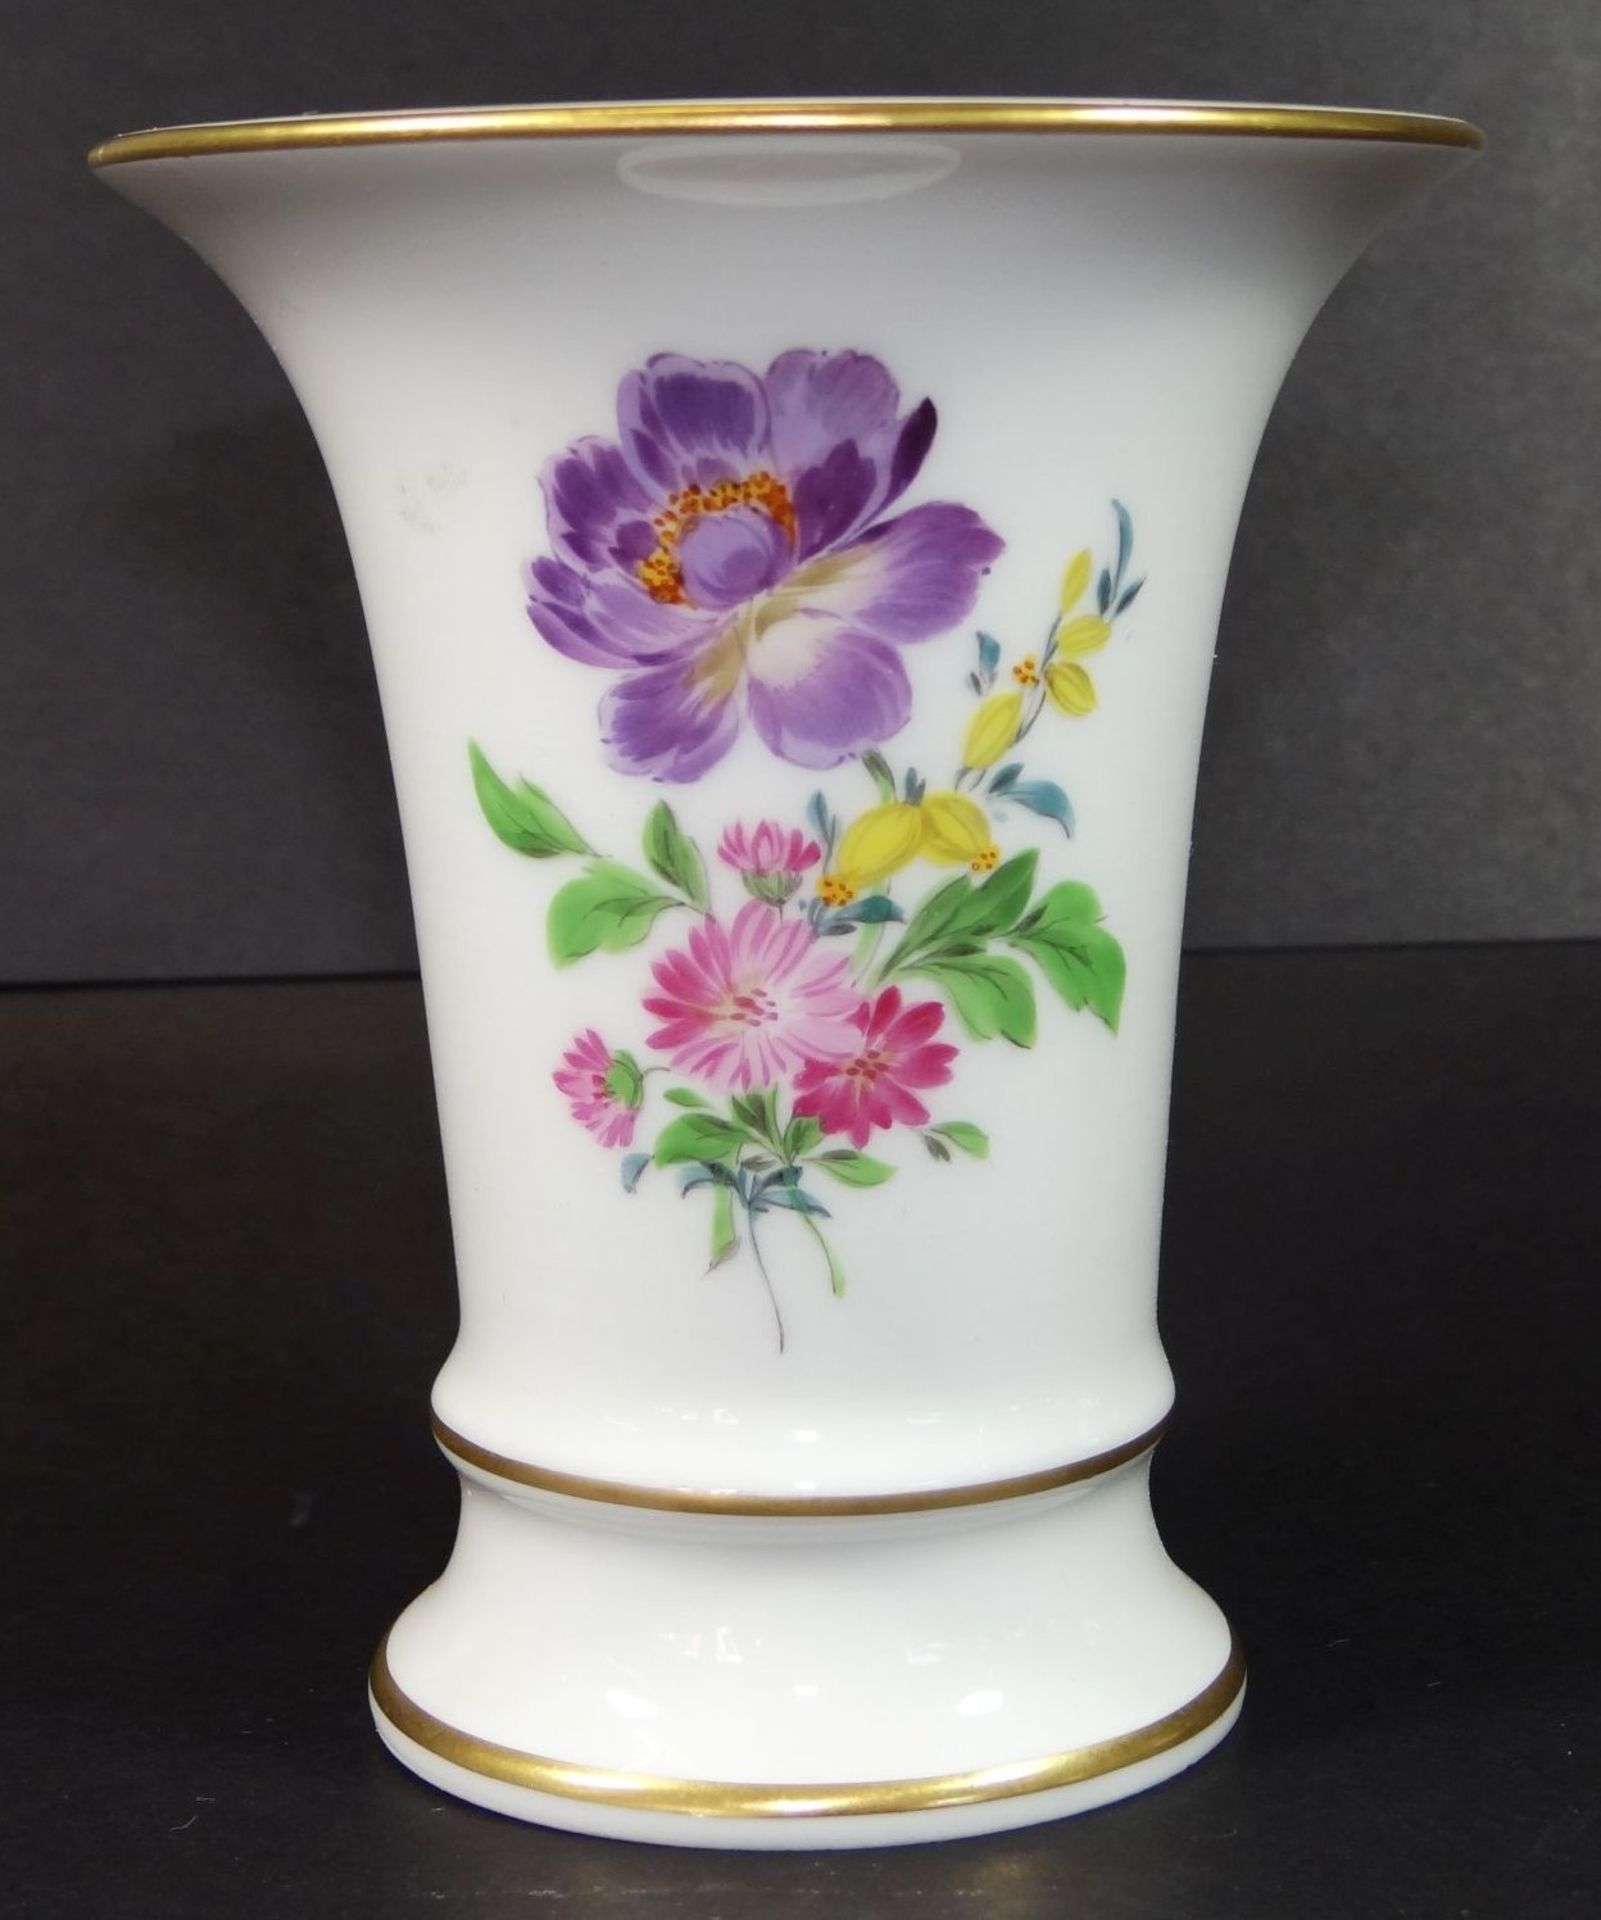 kl. Vase "Meissen" Blumenmalerei, H-10 cm, Schwertermarke durchschliffen